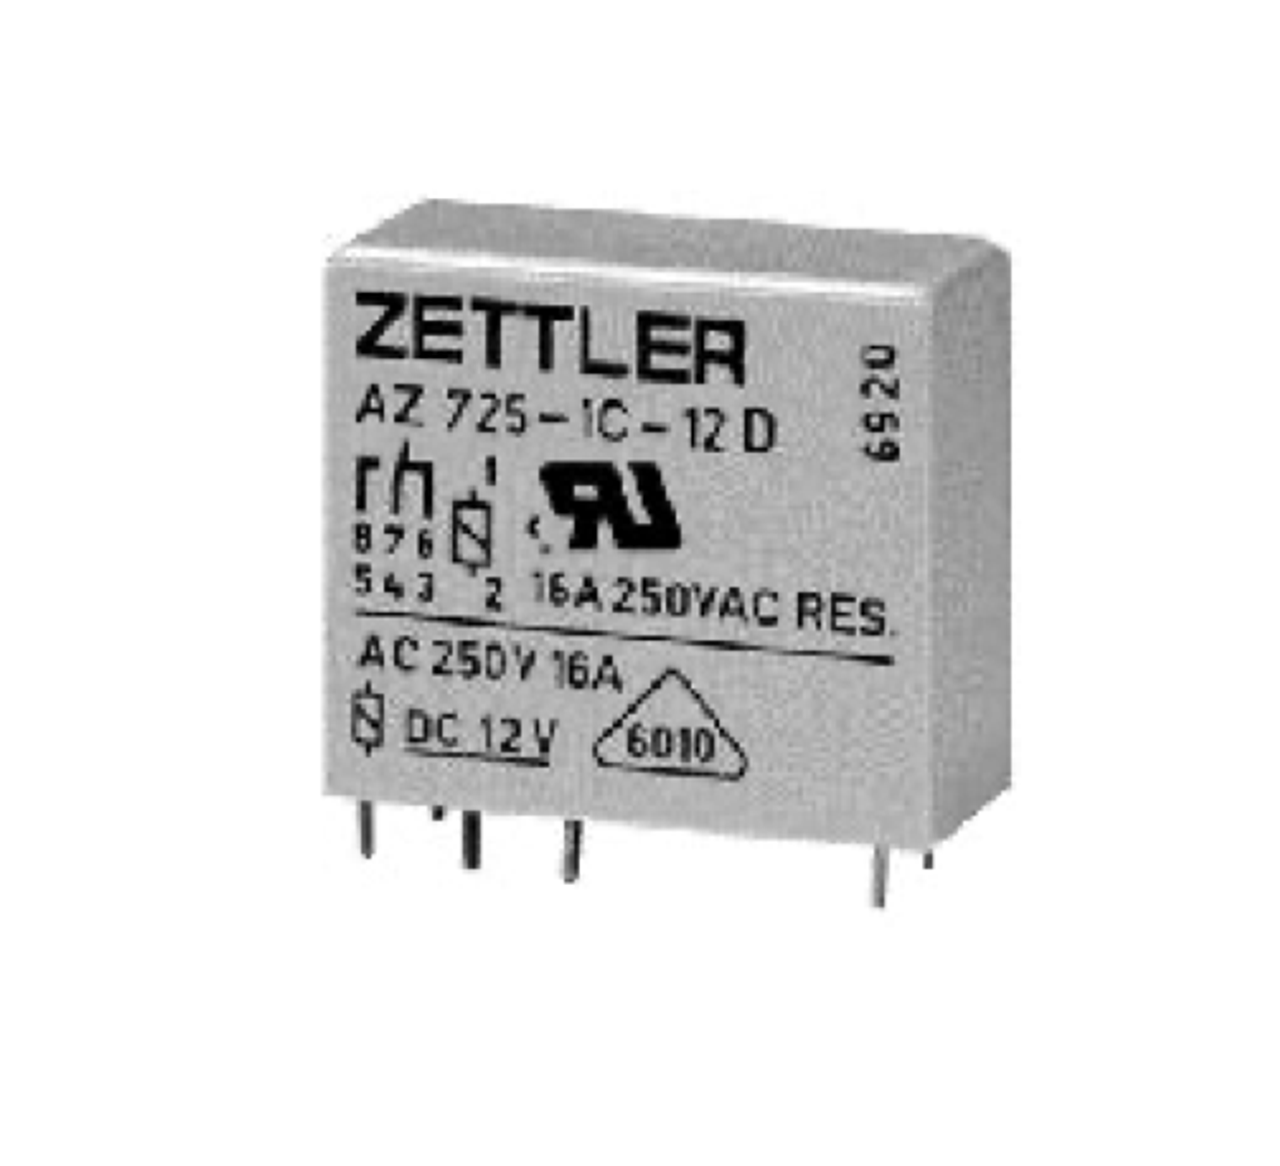 American Zettler AZ725-1CE-12D Power Relay